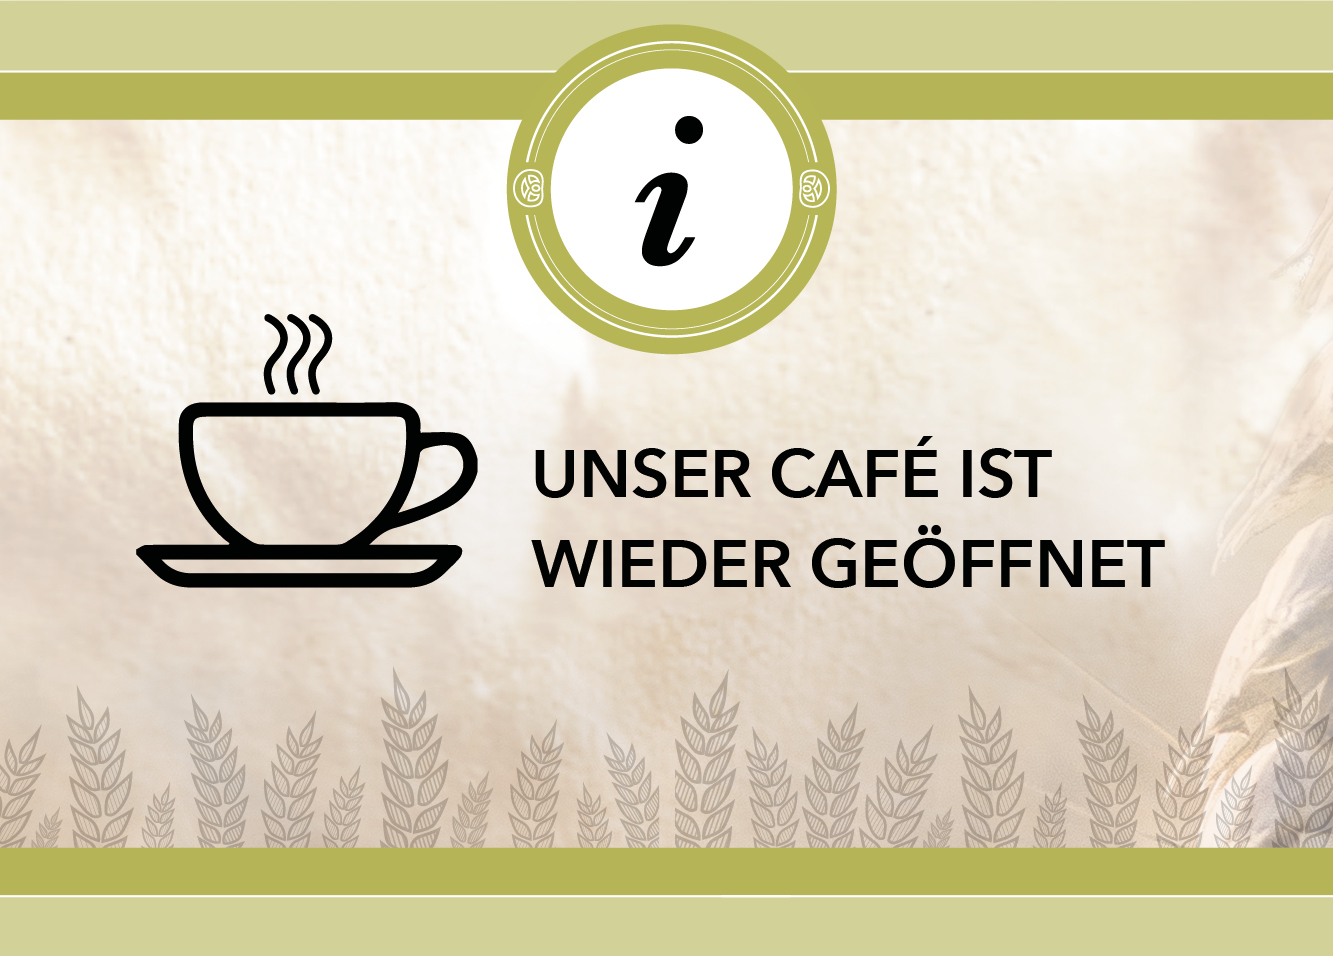 CAFE-BEREICH IST GEÖFFNET